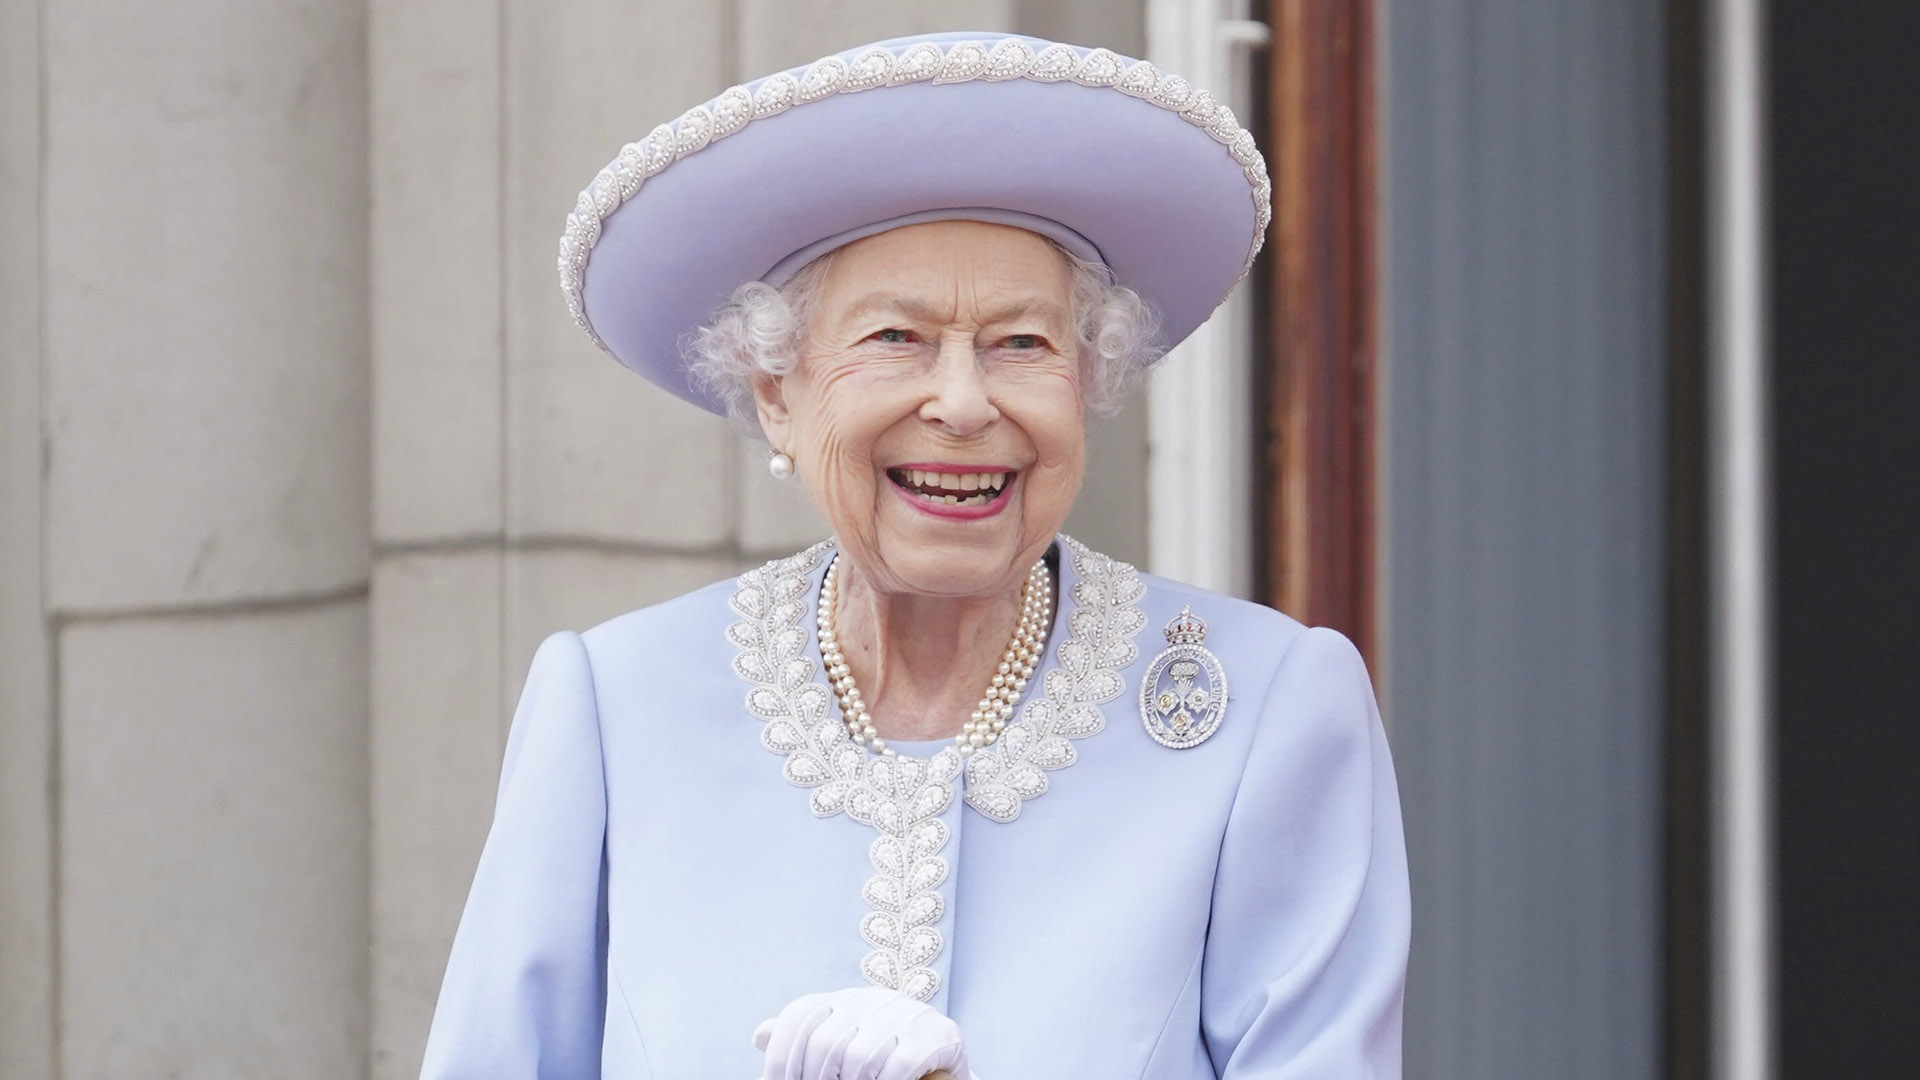 Watch: Queen Elizabeth appears on Buckingham Palace balcony